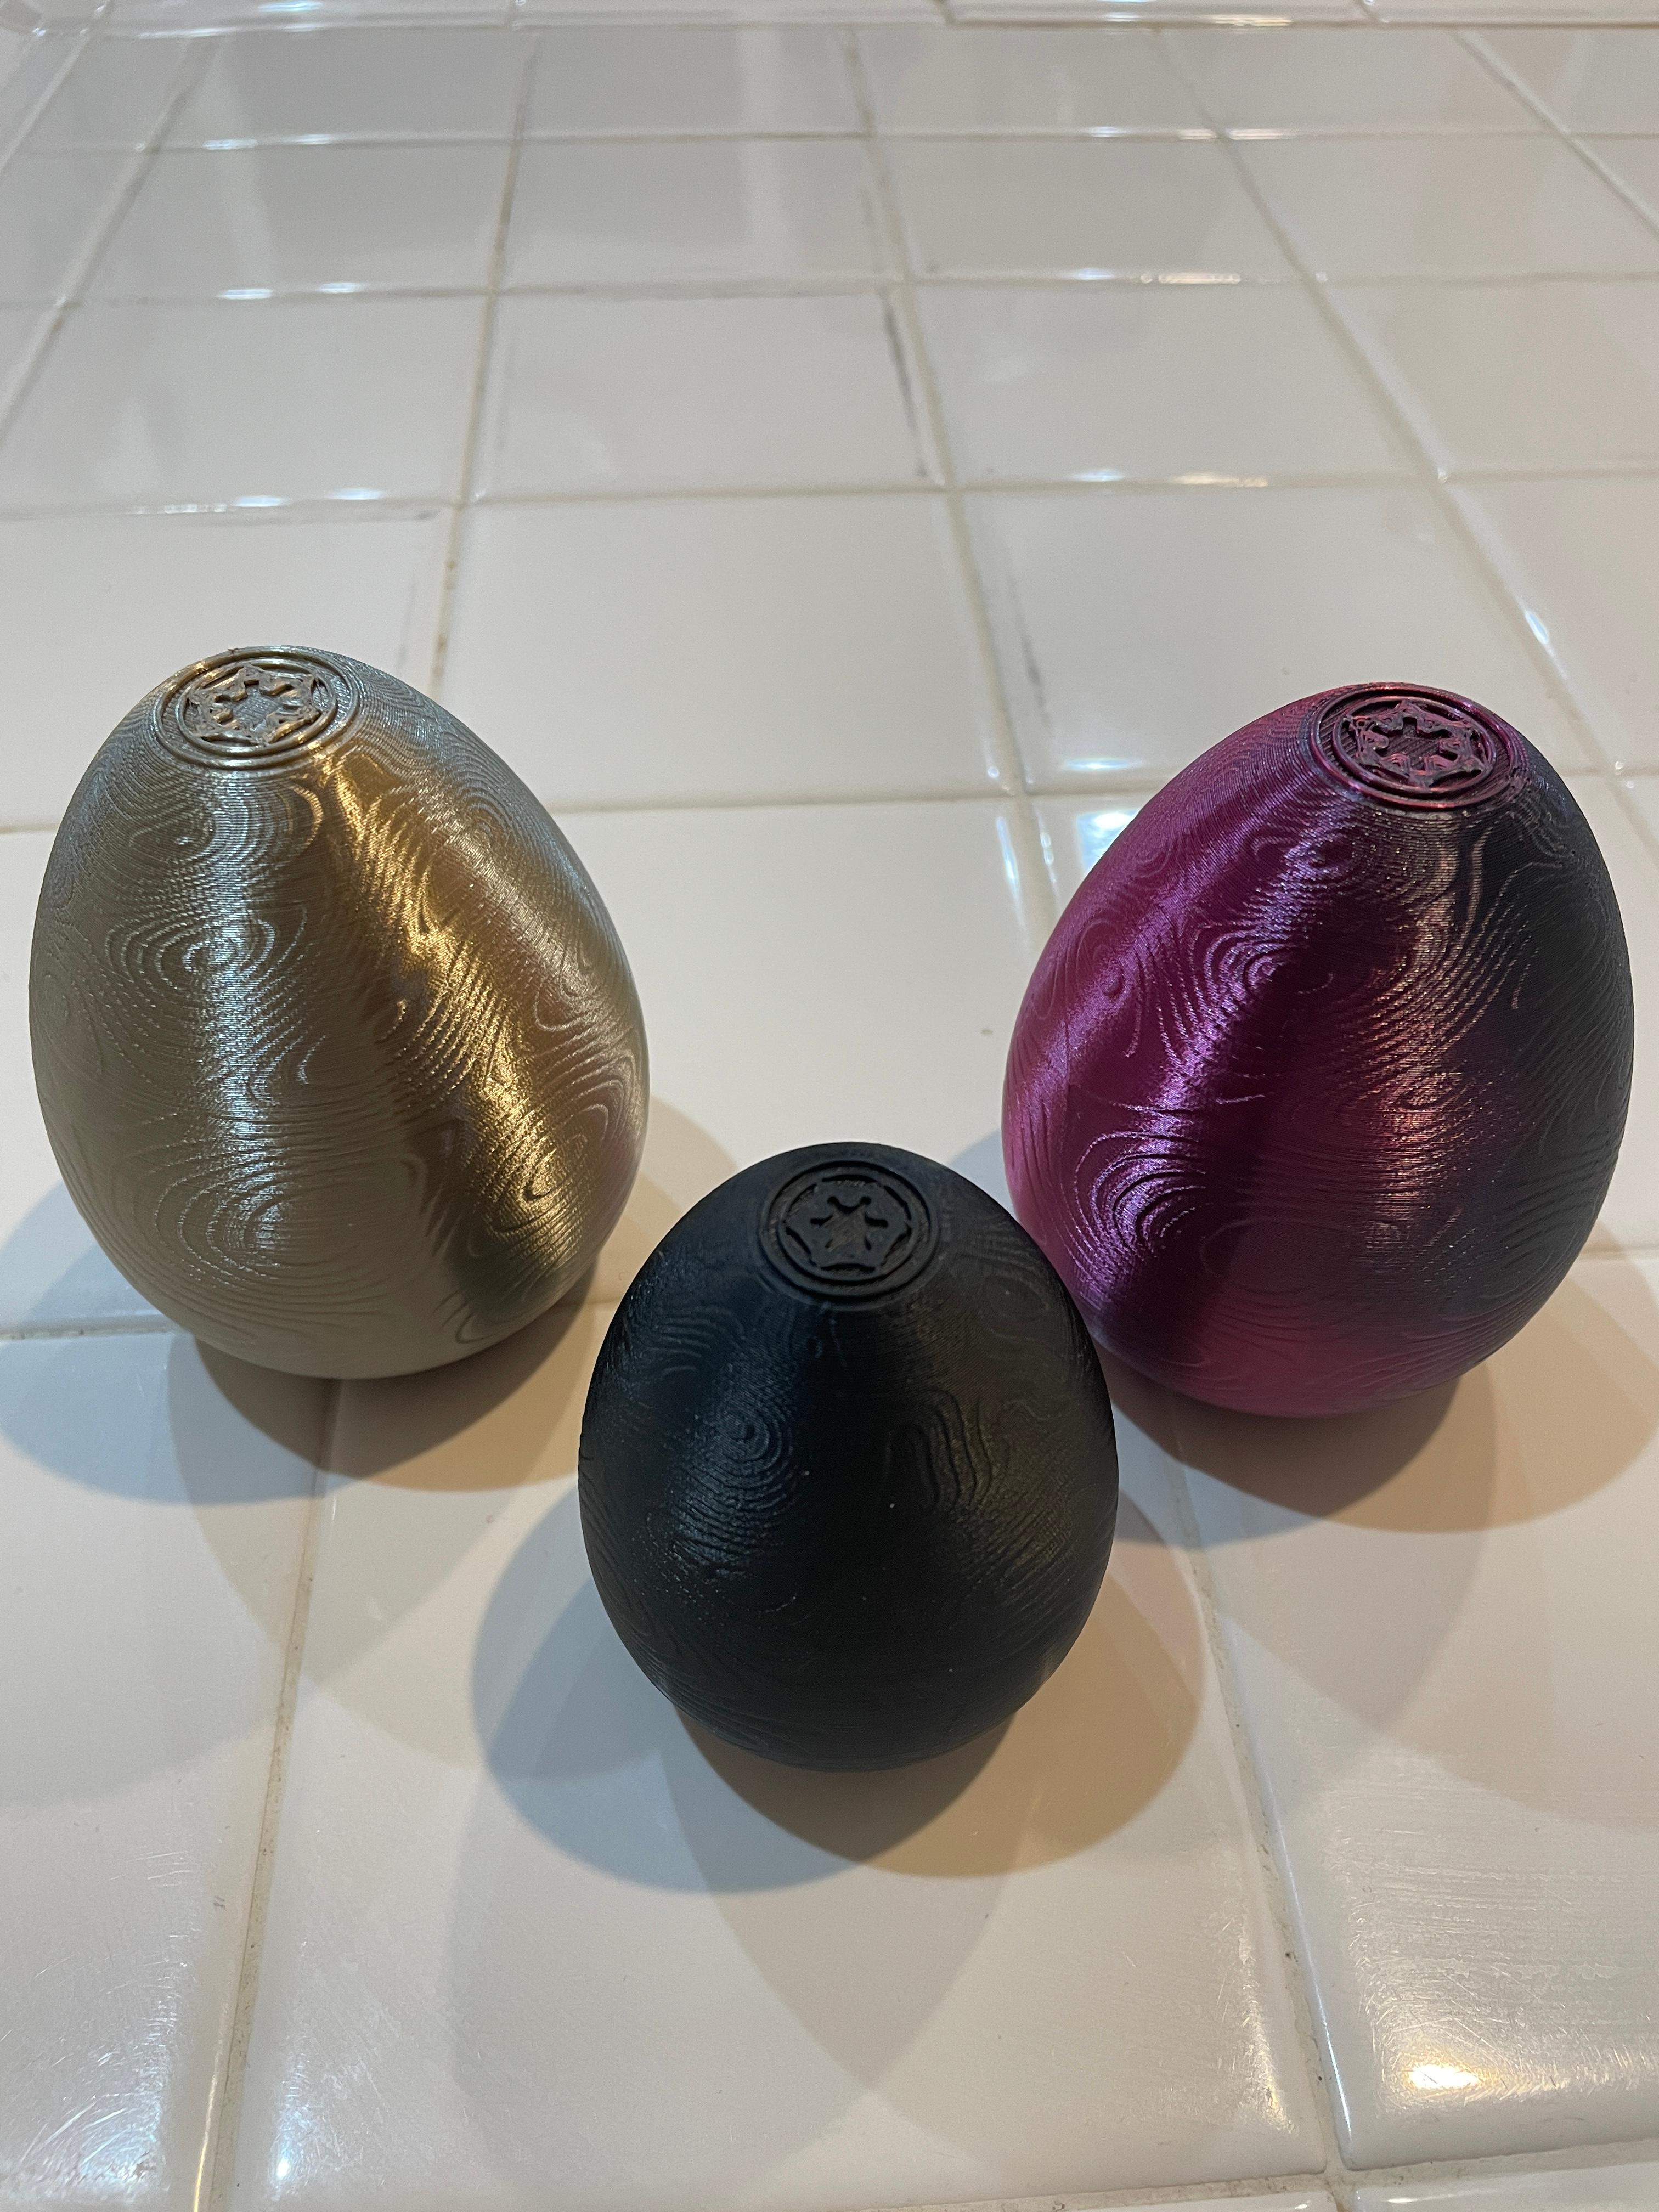 Beskar Easter Egg v2 - Love these, made for my grandchildren! - 3d model